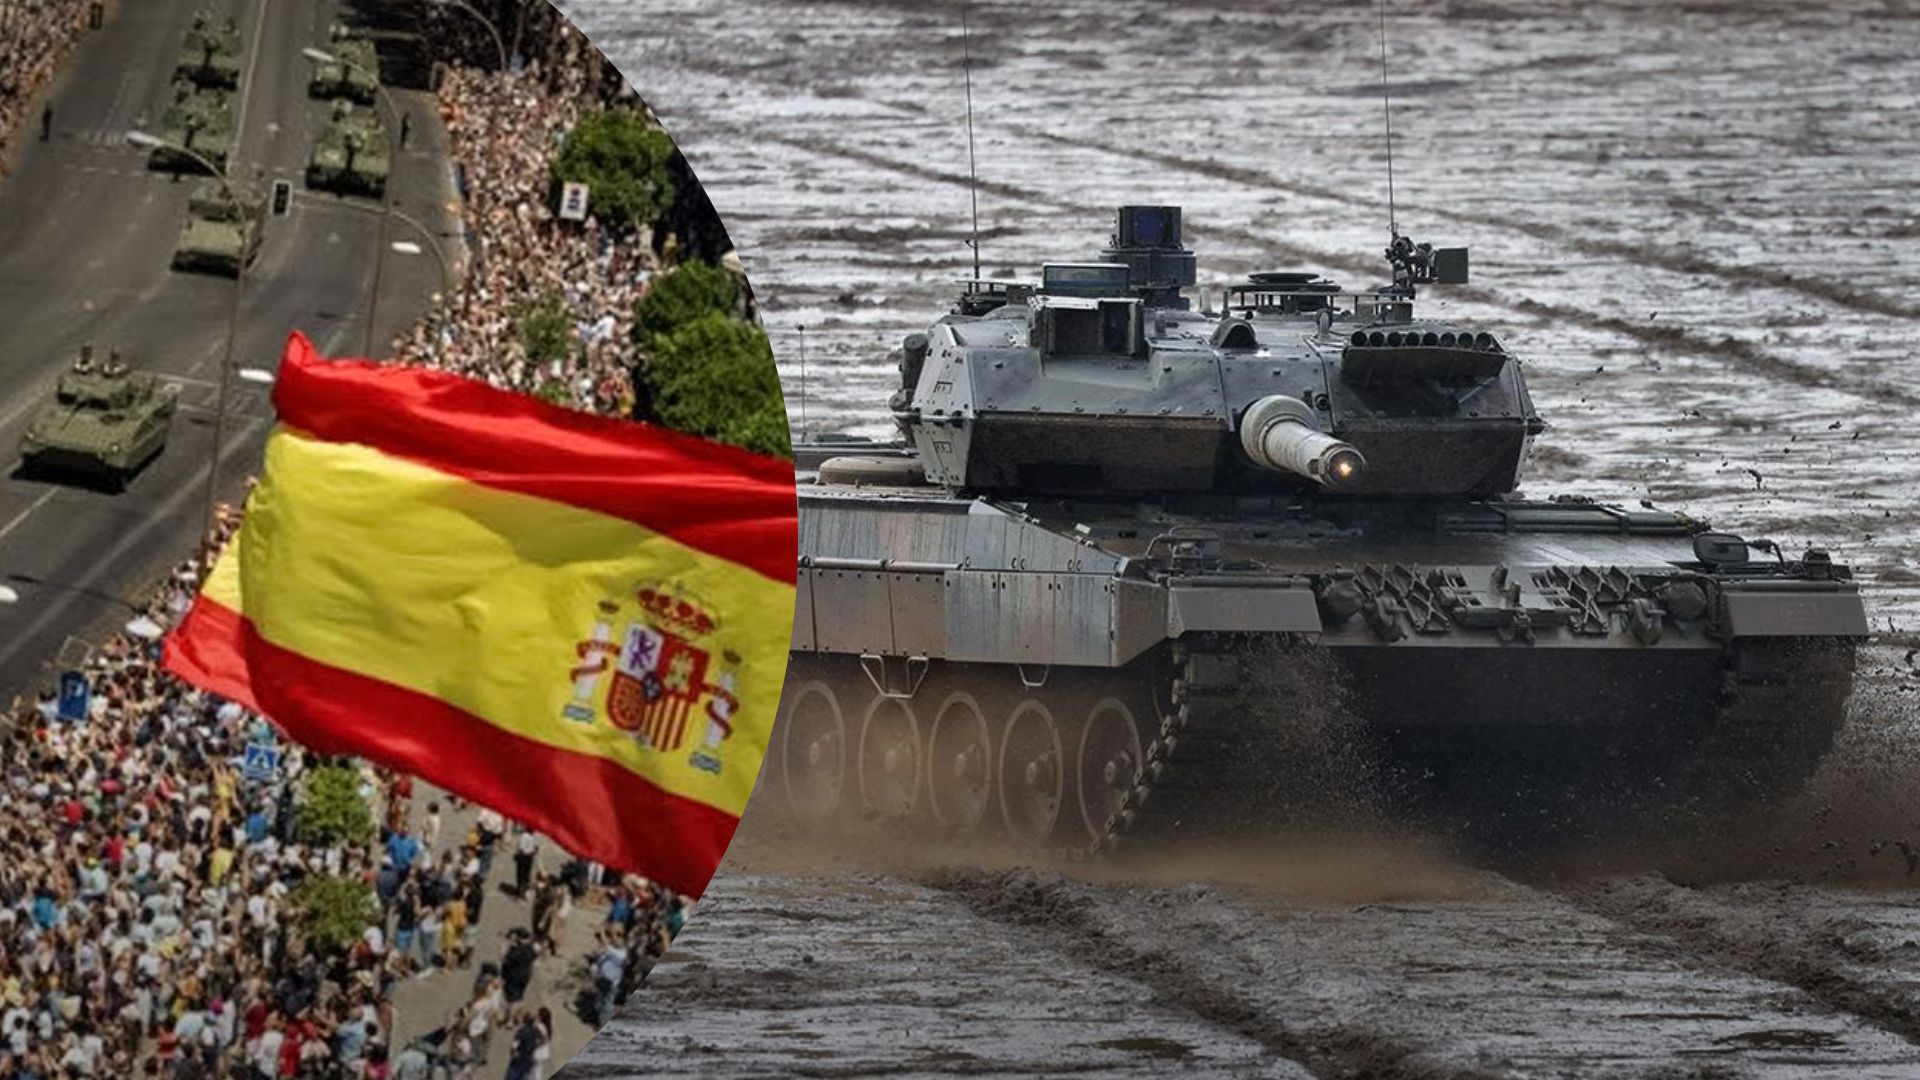 Танки Leopard 2 для Украины - Испания готова передать боевые машины, сколько у нее - 24 Канал